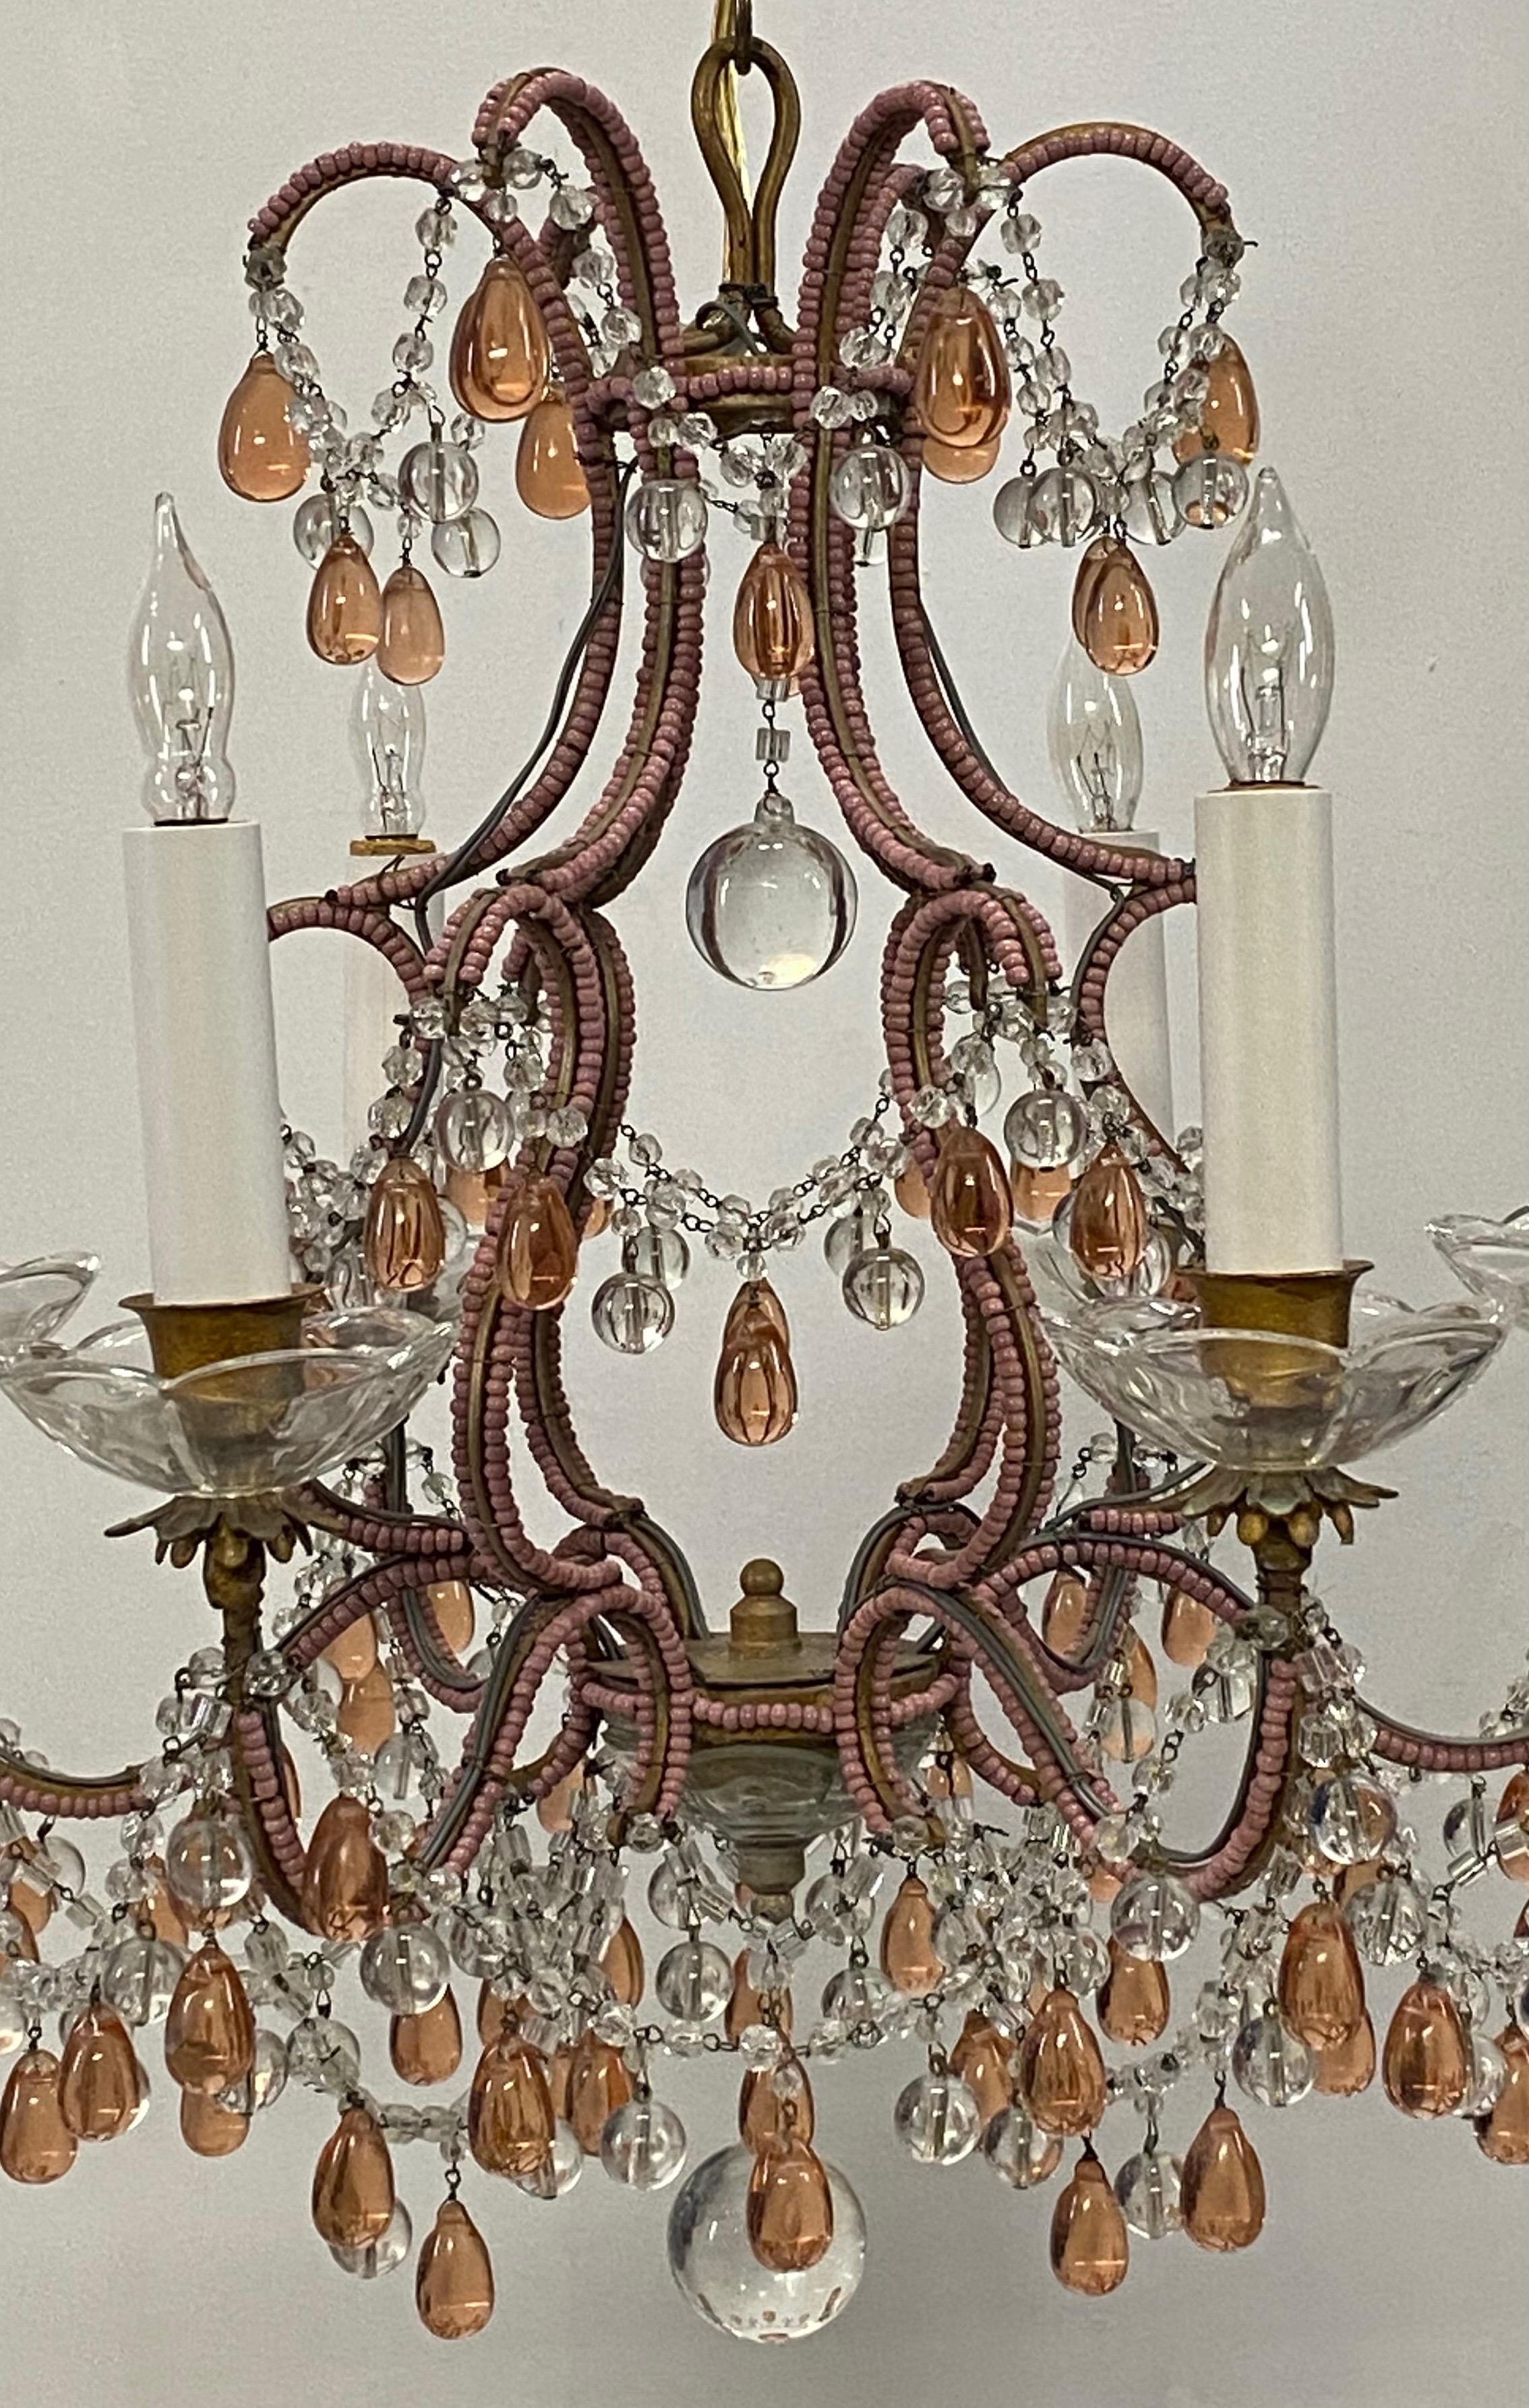 pink beaded chandelier